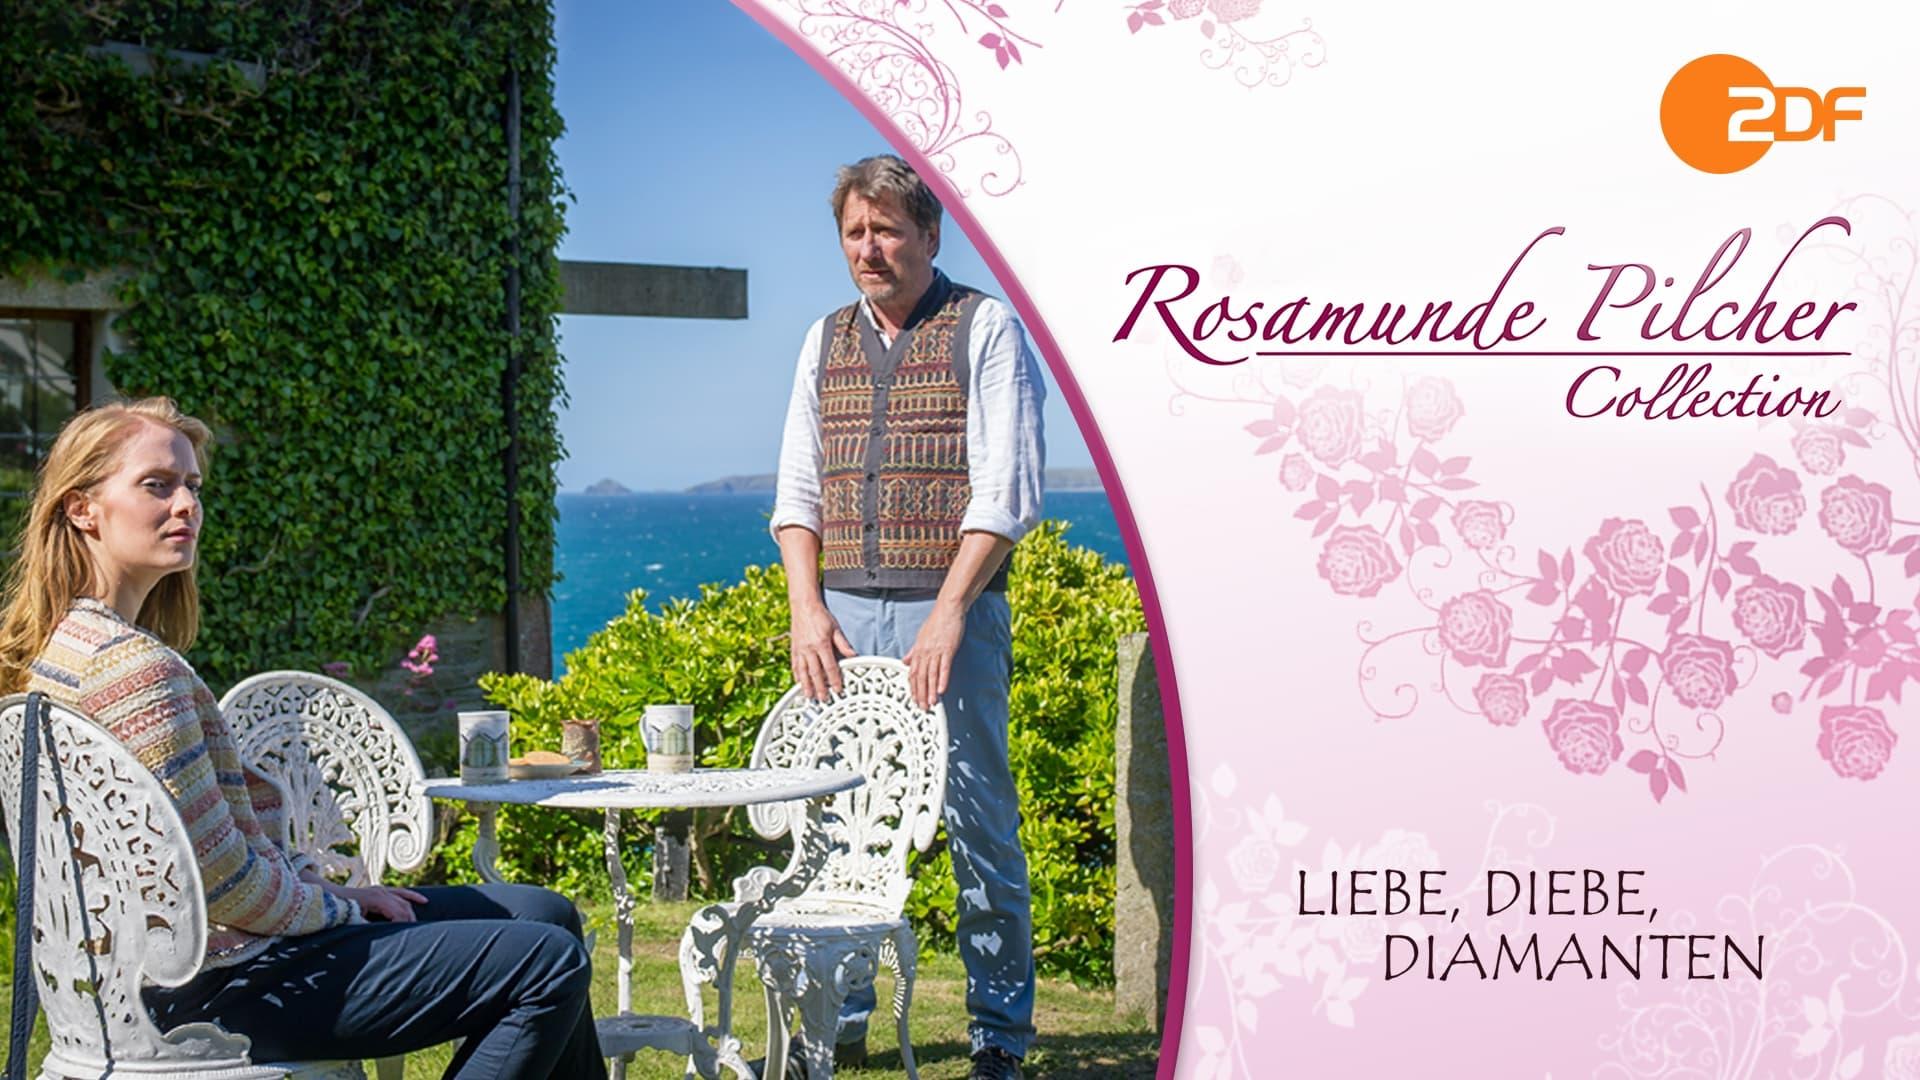 Rosamunde Pilcher: Liebe, Diebe, Diamanten backdrop